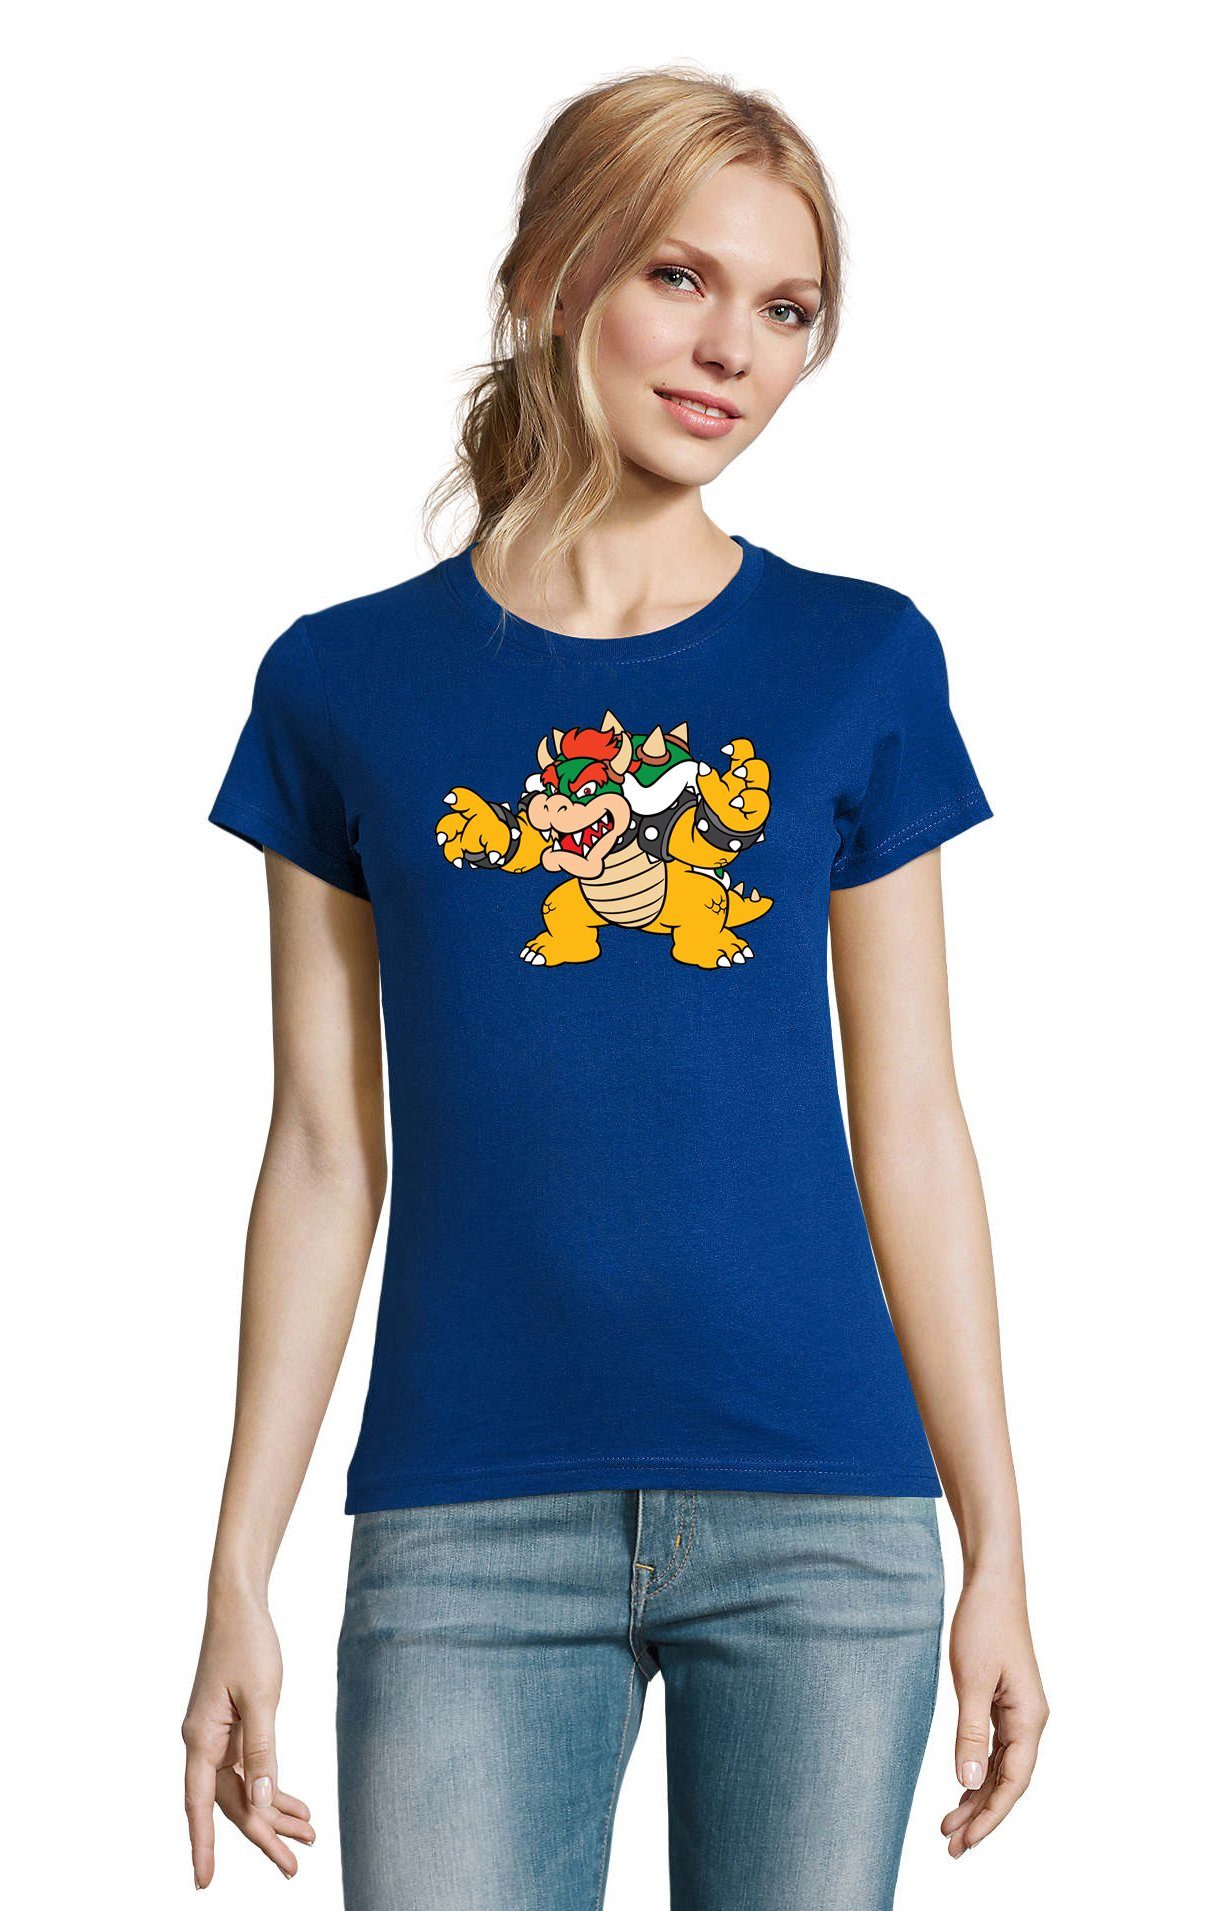 Blondie & Brownie T-Shirt Damen Bowser Nintendo Mario Yoshi Luigi Game Gamer Gaming Konsole Blau